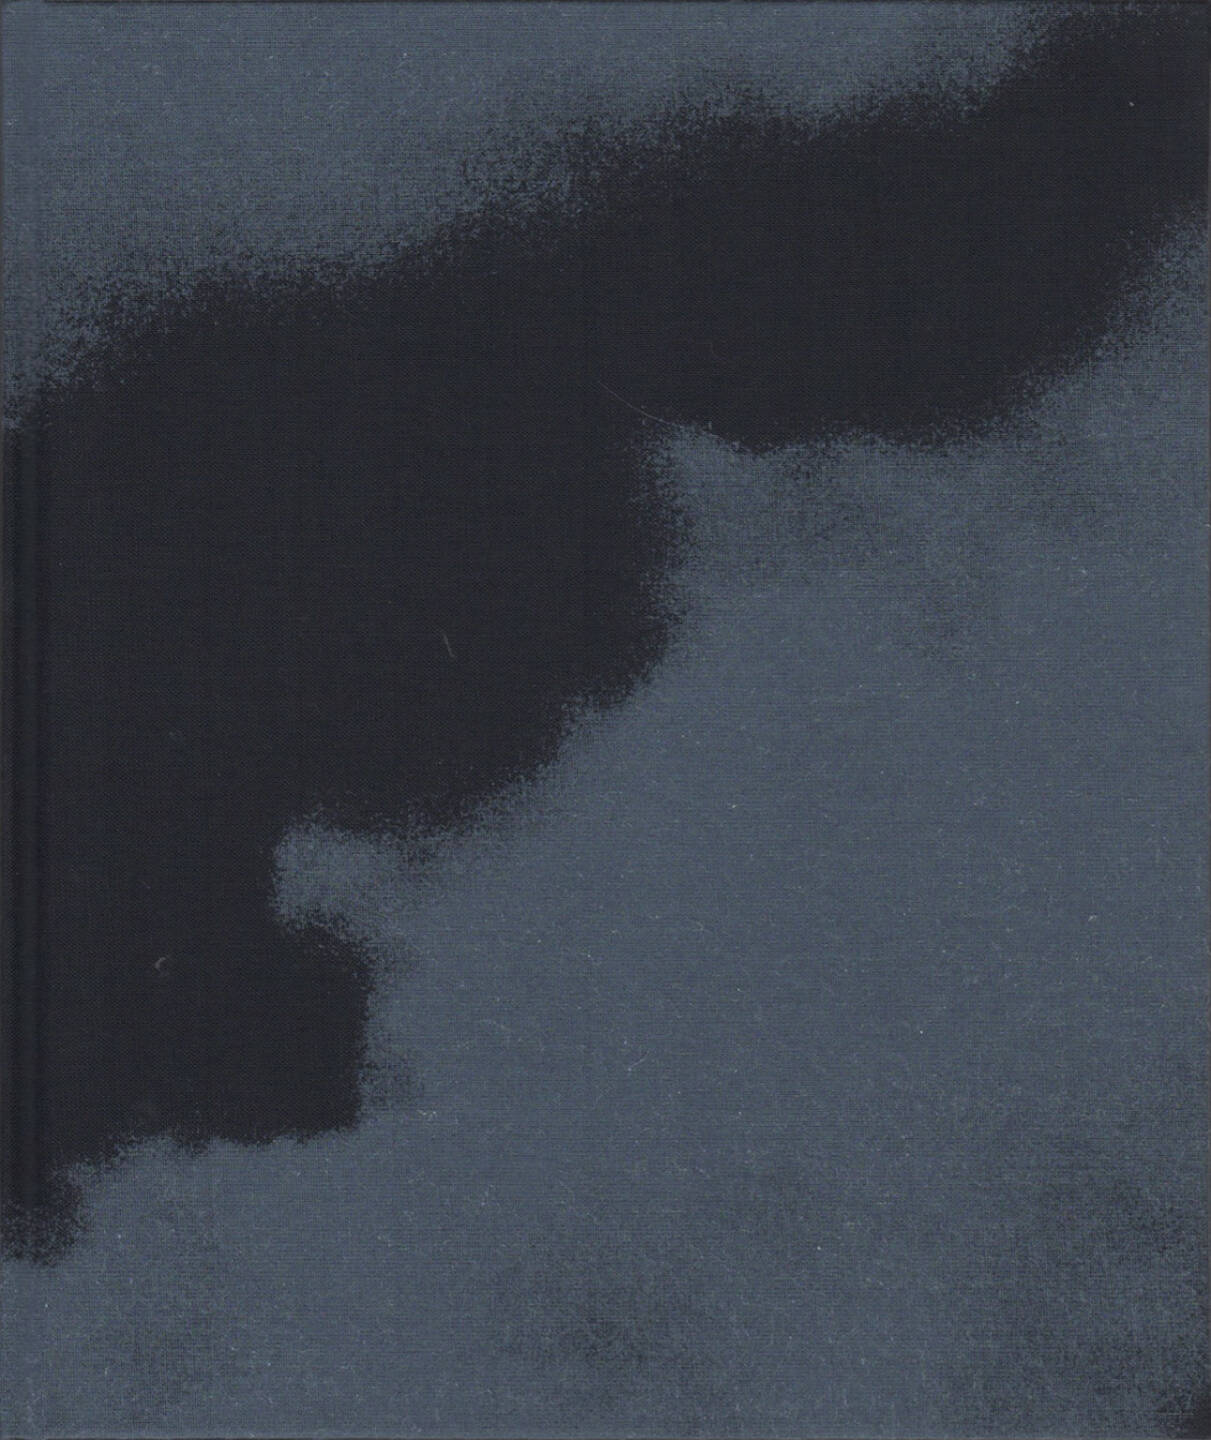 Masakazu Murakami - Kumogakure Onsen: Reclusive Travels, Roshin books 2015, Cover - http://josefchladek.com/book/masakazu_murakami_-_kumogakure_onsen_reclusive_travels_村上仁一_写真集_雲隠れ温泉行